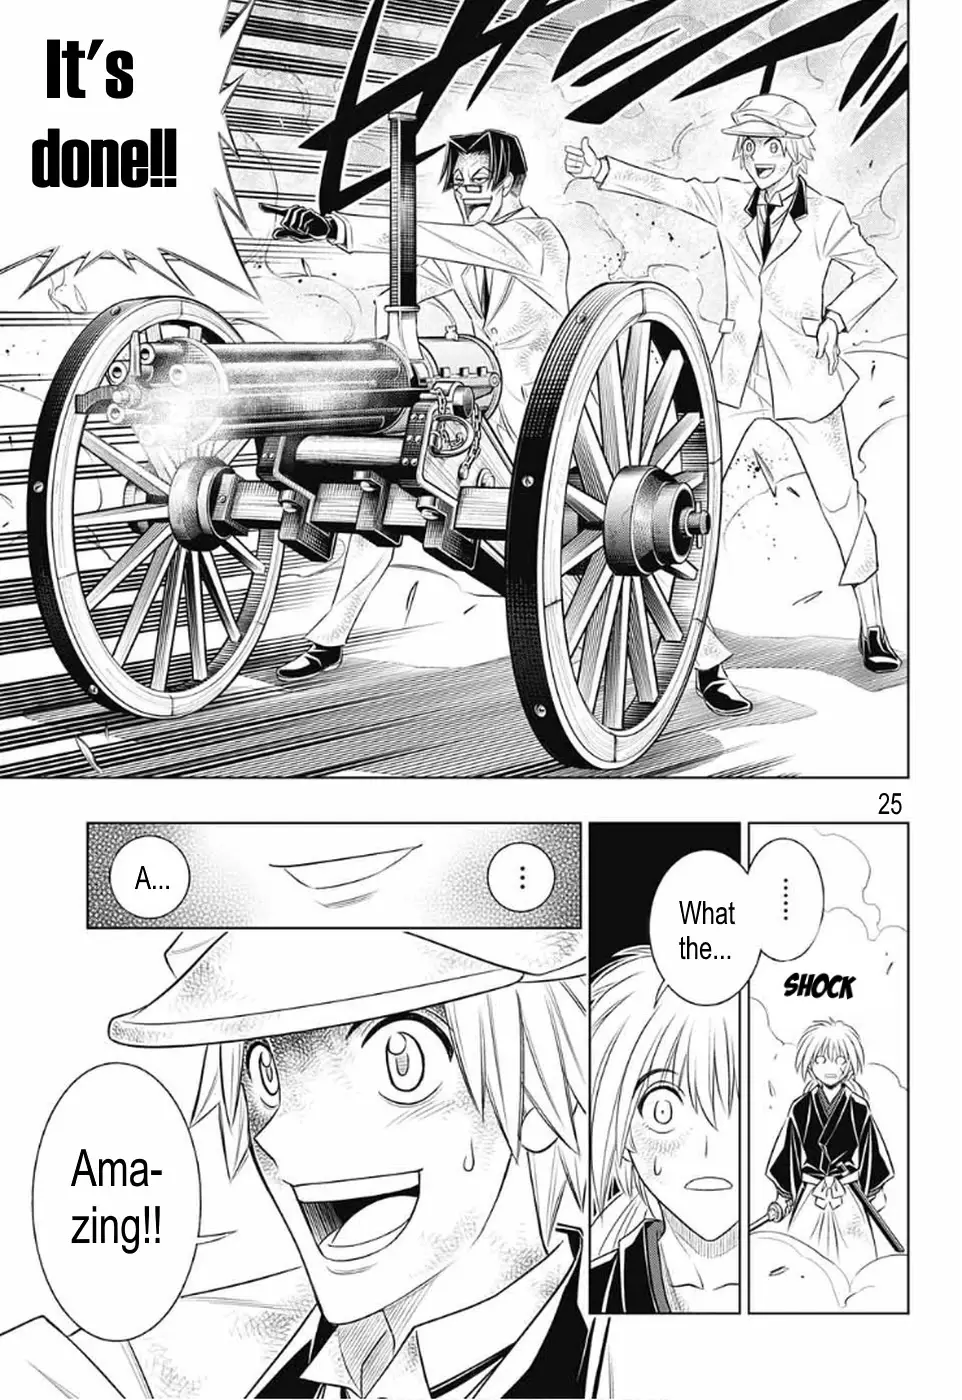 Rurouni Kenshin: Hokkaido Arc - 33 page 23